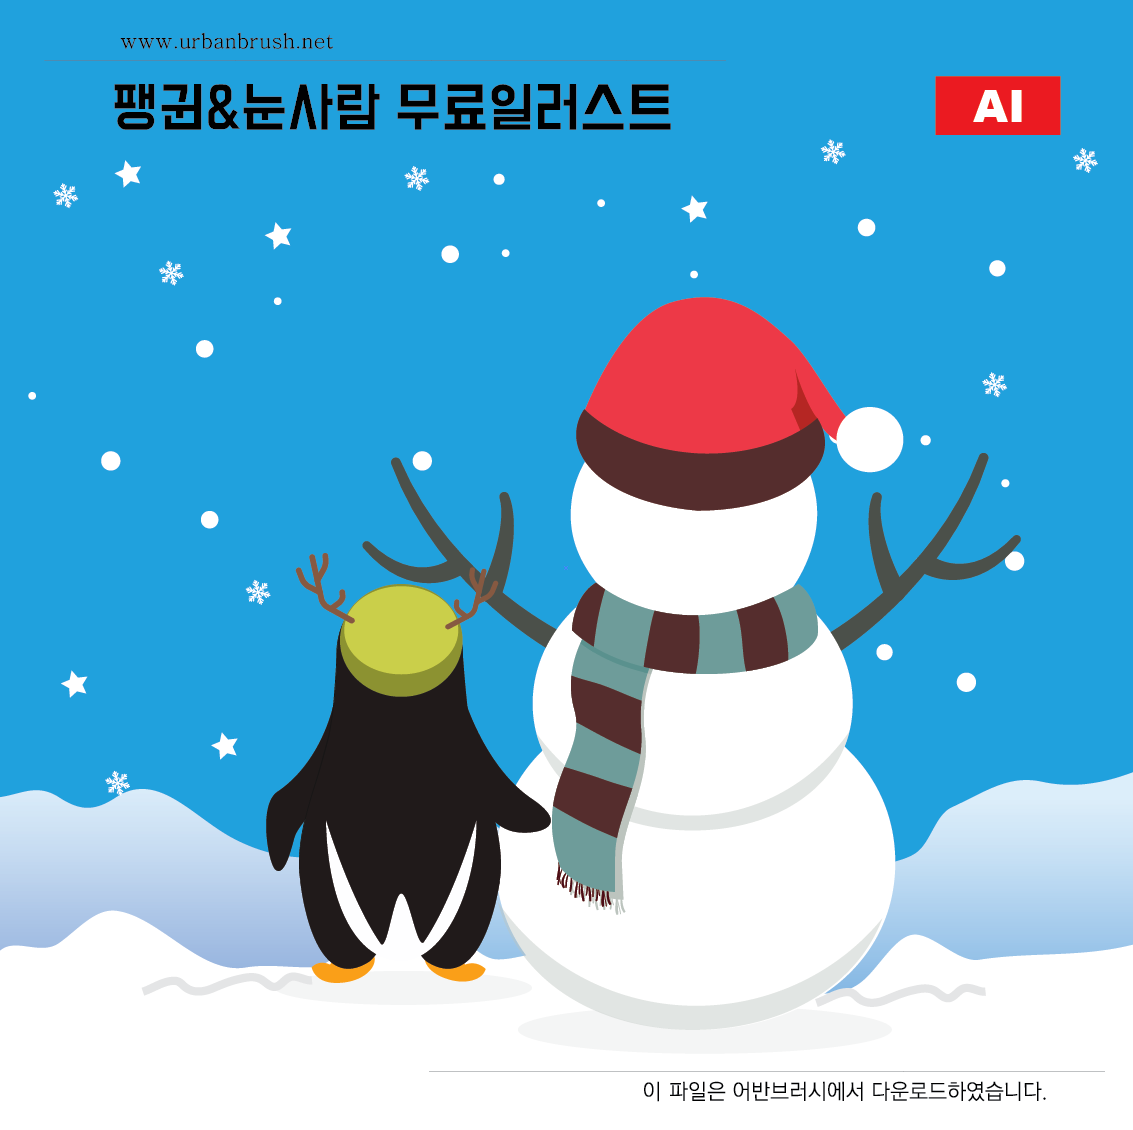 팽귄과 눈사람 일러스트 ai 무료다운로드 - penguin & snowman - Urbanbrush